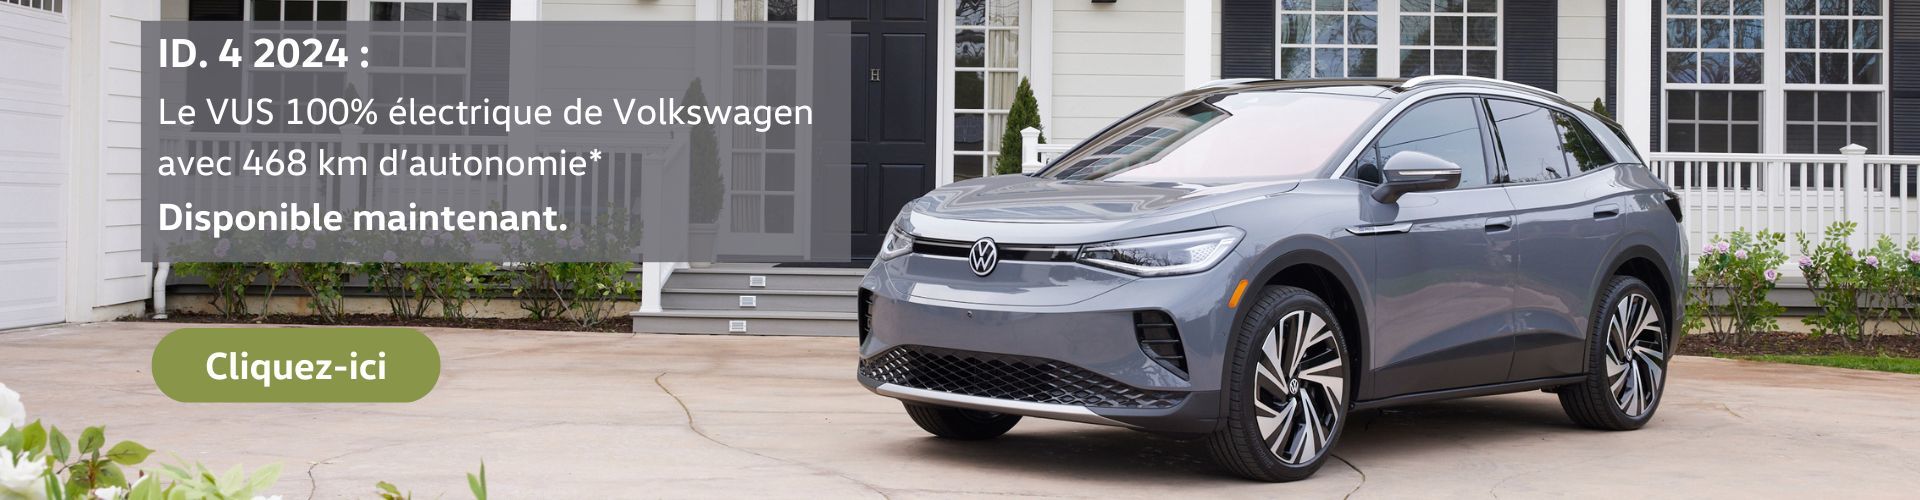 ID.4 2024 de VW, notre nouveau VUS multisegment électrique au design légendaire et à prix abordable !